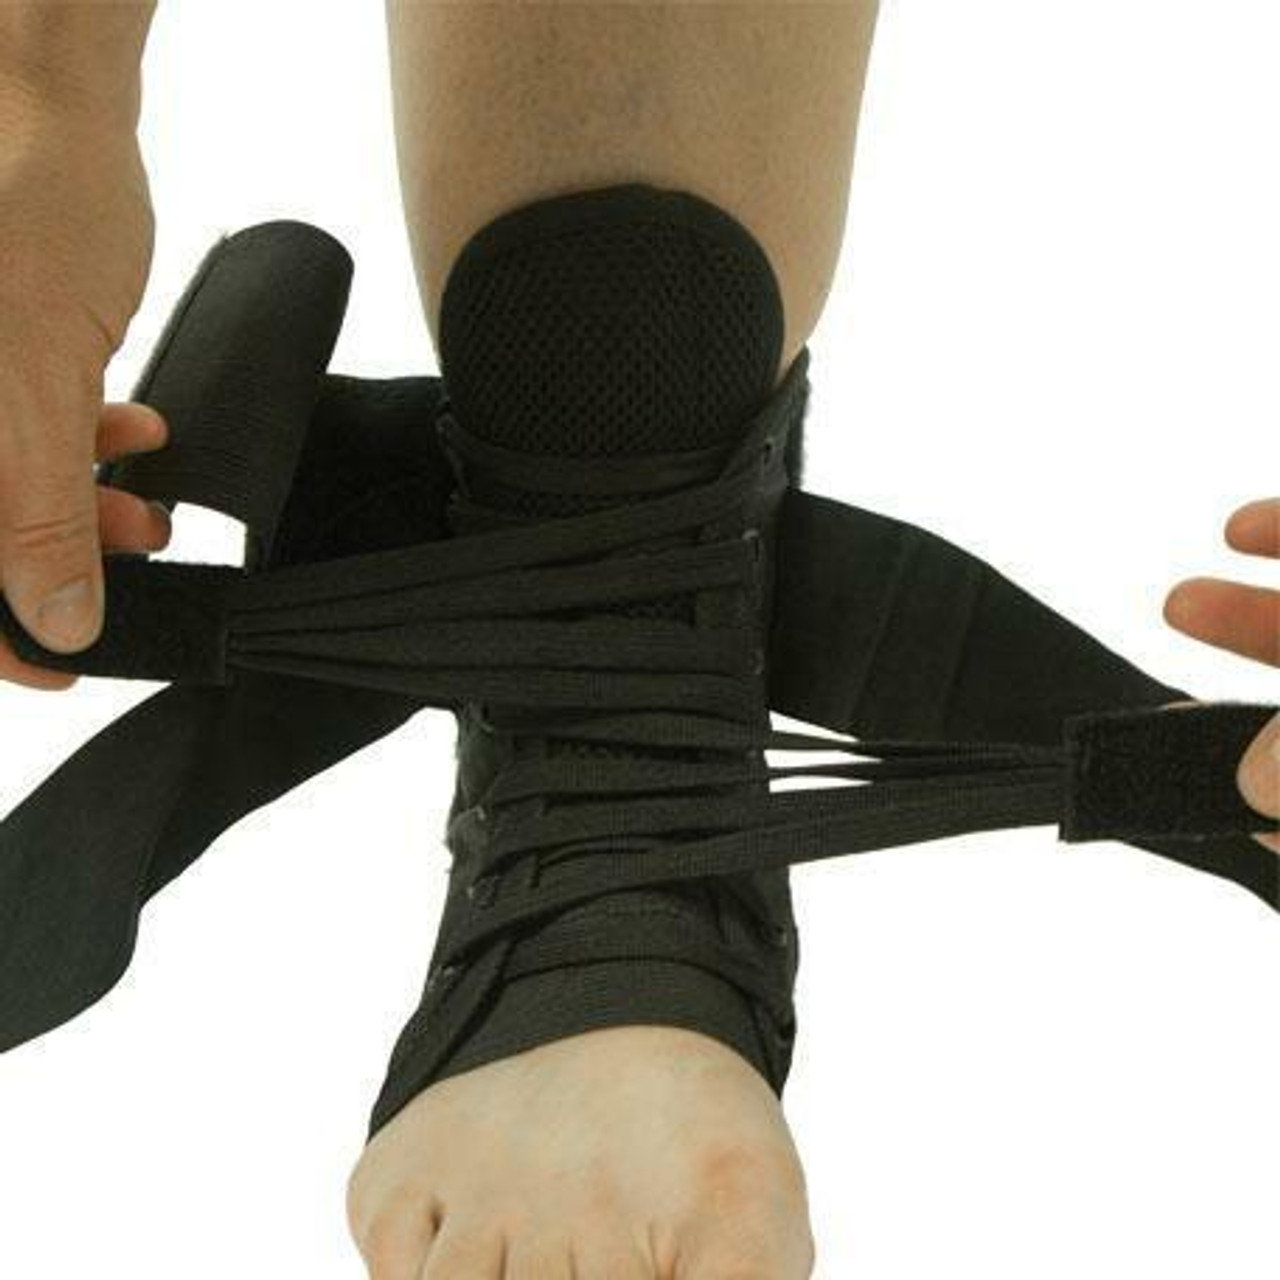 Breg Lace-up Ankle Brace - Banff Sport Medicine